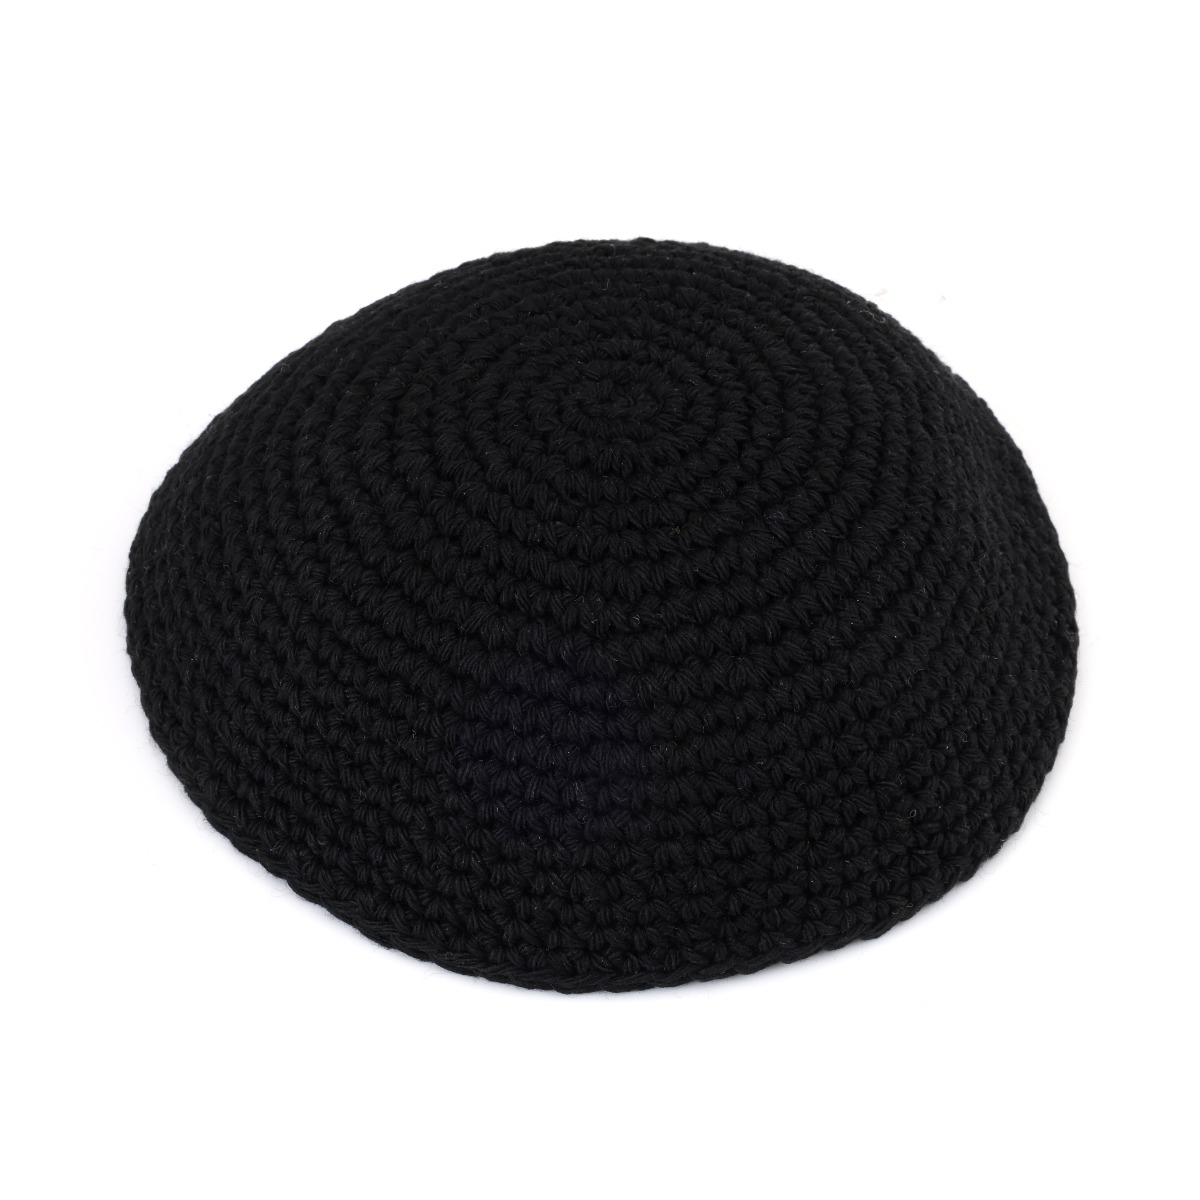 Thick-Thread Black Knitted Kippah - 1